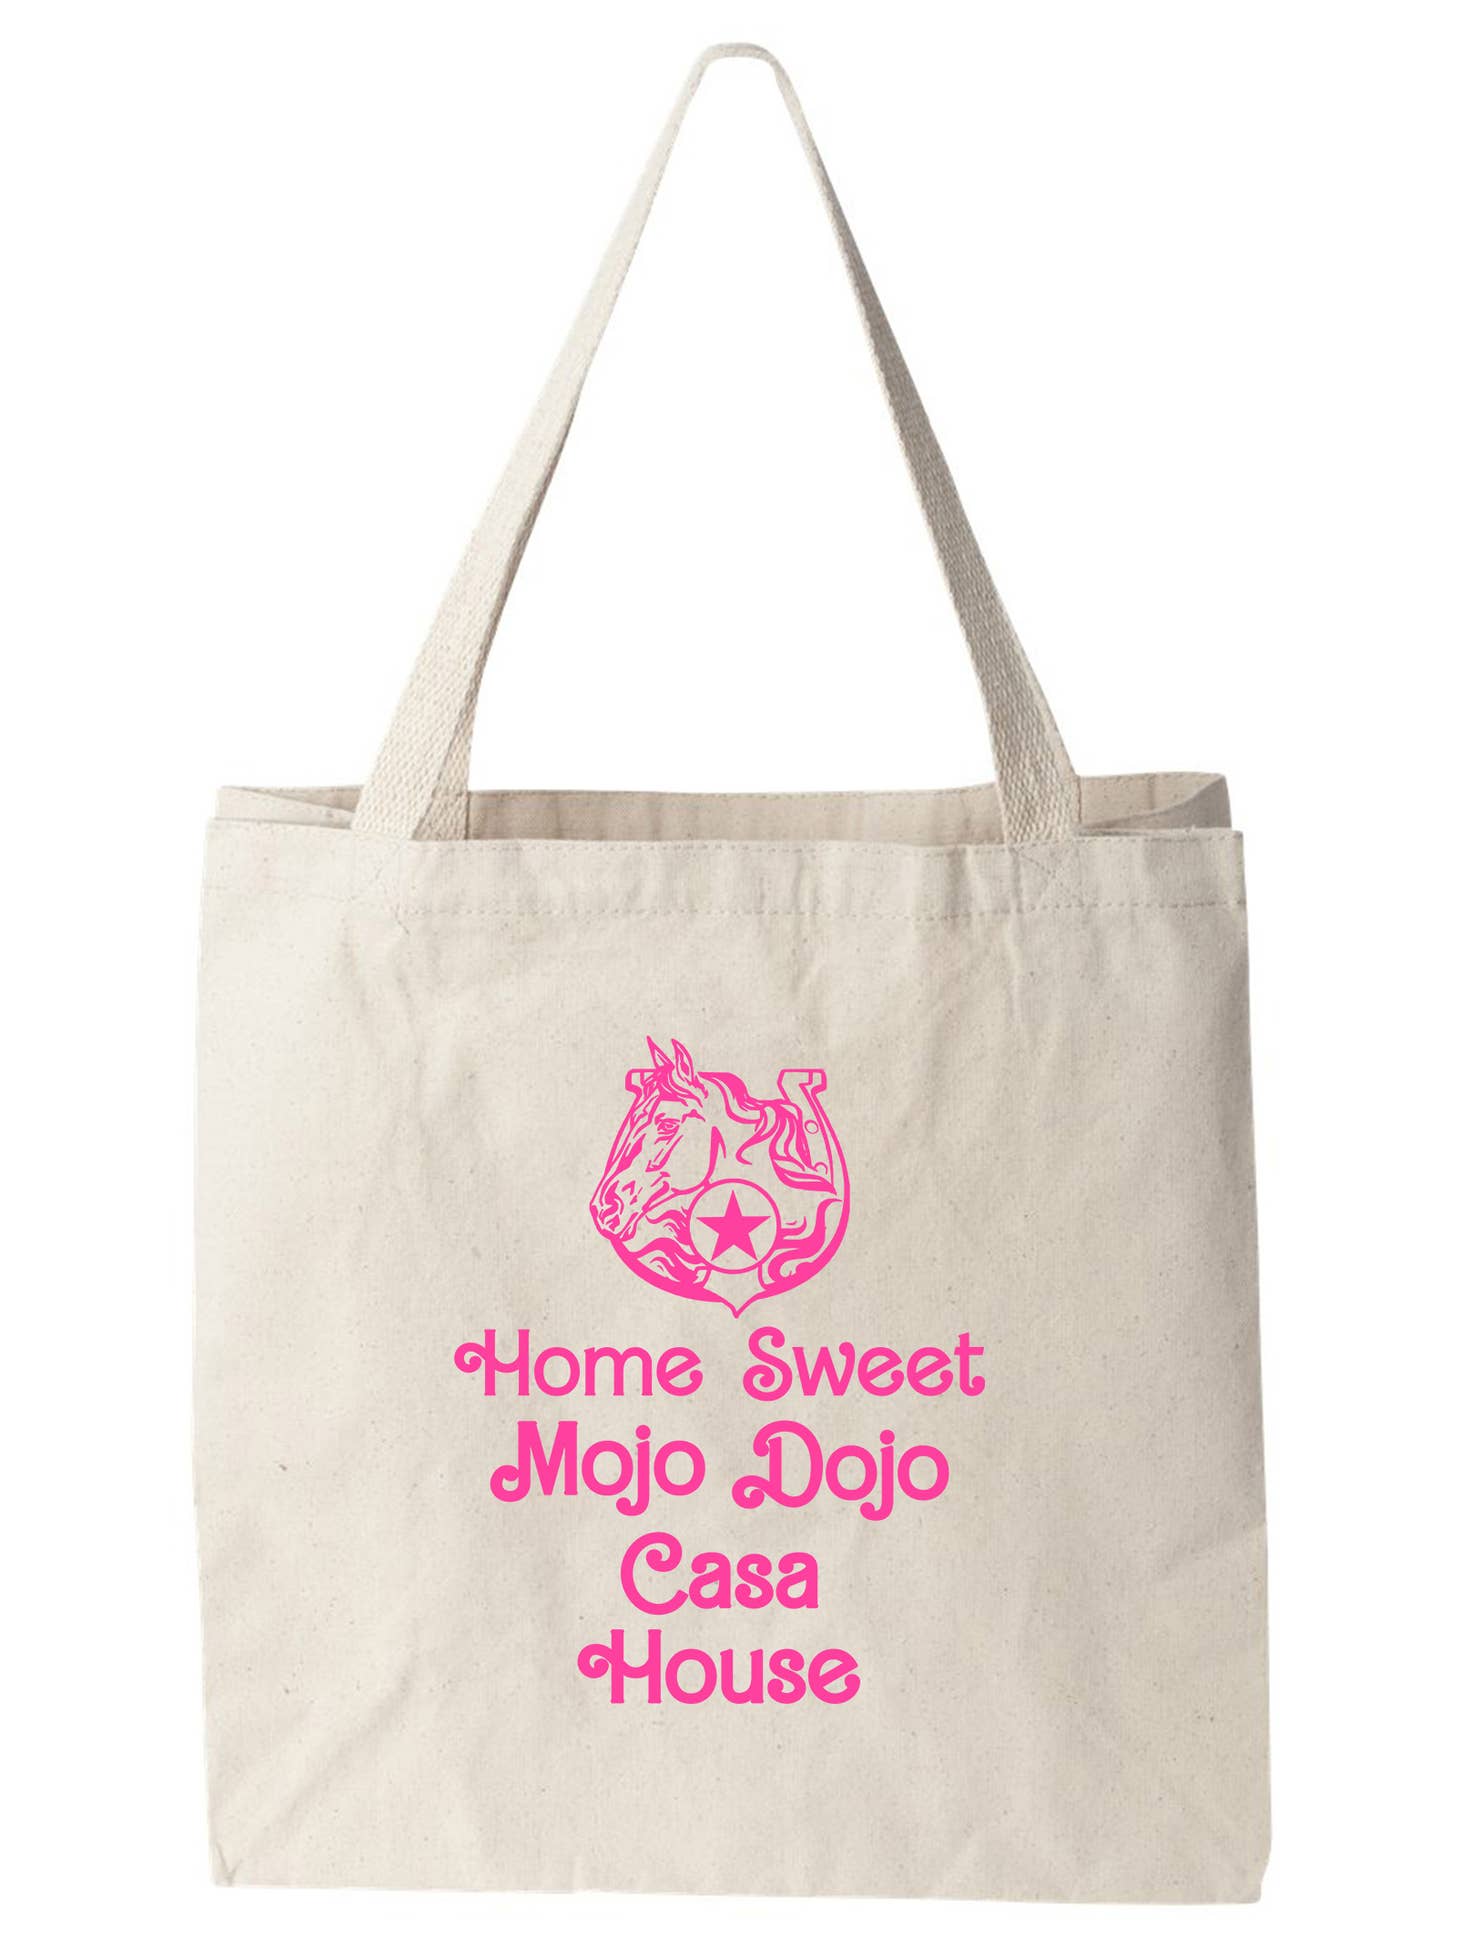 Home Sweet Mojo Dojo Casa House- Tote Bag